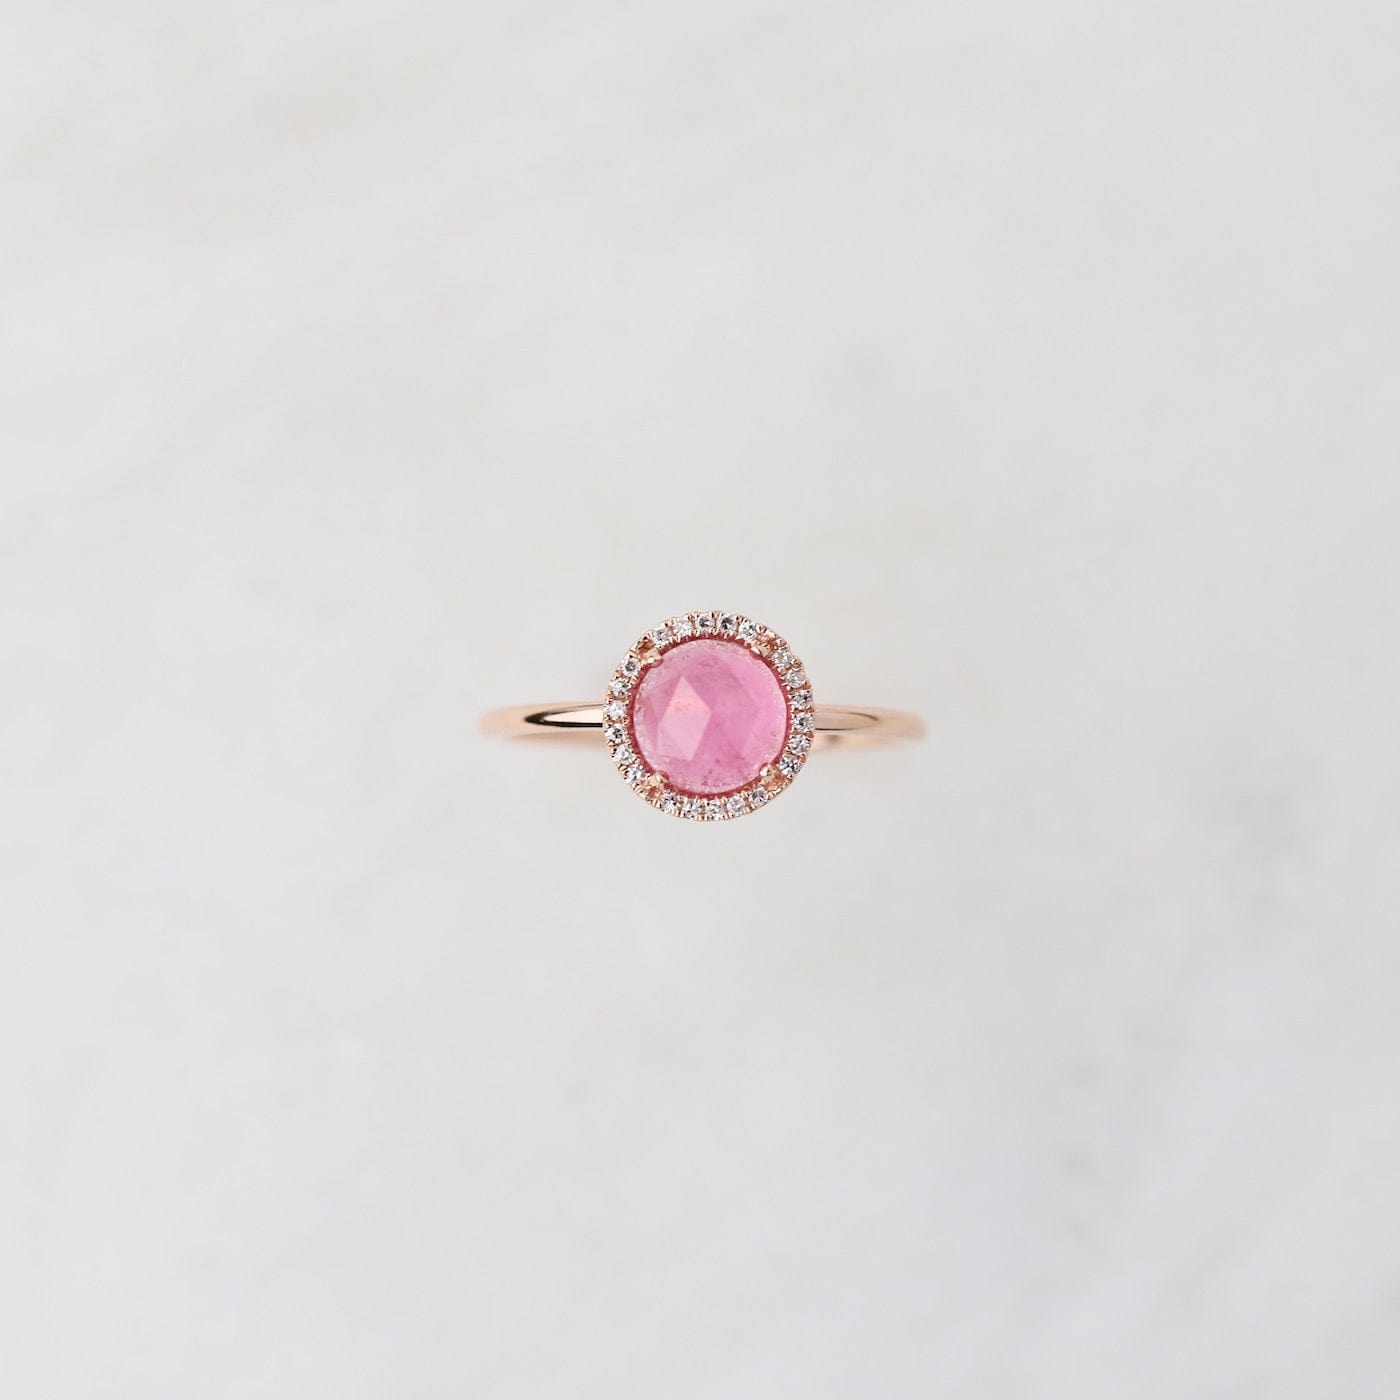 RNG-14K 14k Rose Gold Rose Cut Pink Tourmaline Ring with Diamond Halo